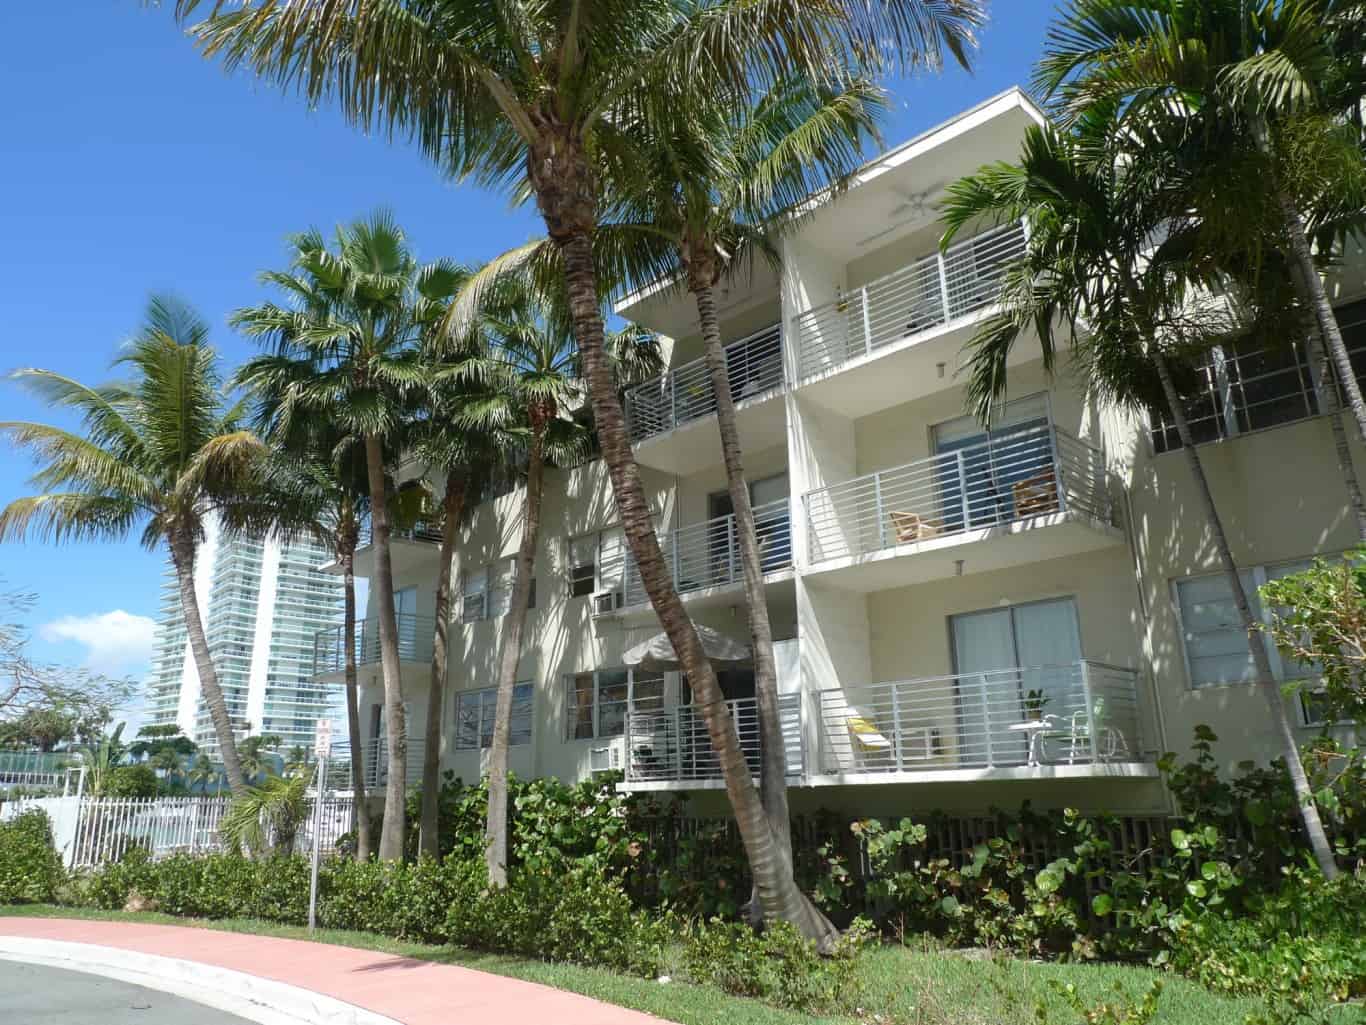 Miami Beach Housing by Mark Hogan